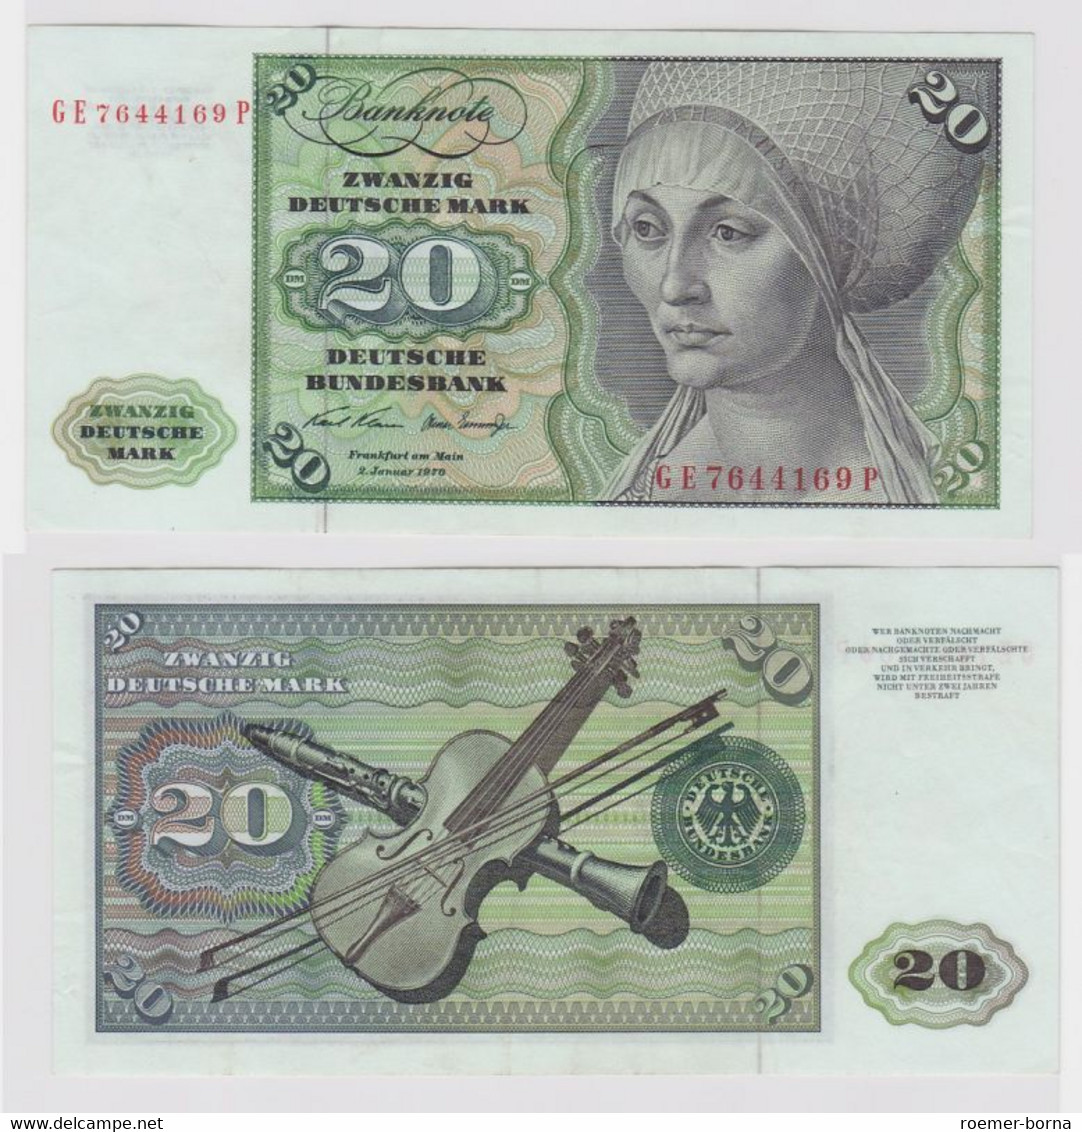 T148284 Banknote 20 DM Deutsche Mark Ro. 271b Schein 2.Jan. 1970 KN GE 7644169 P - 20 DM